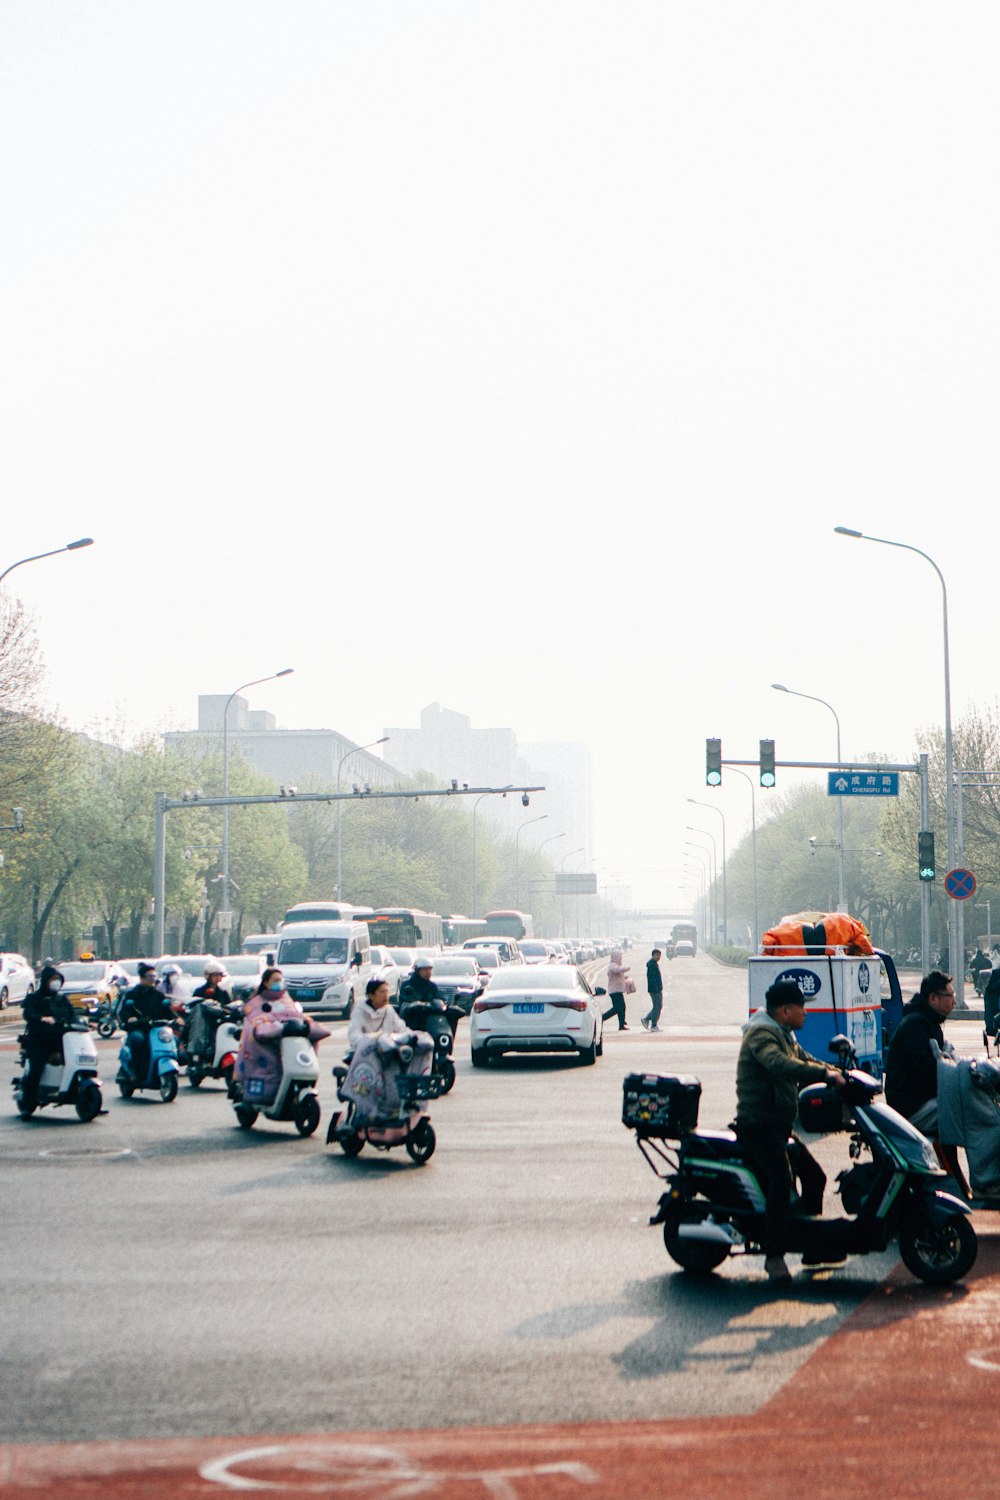 Eine Gruppe von Menschen, die mit Motorrädern eine Straße entlang fahren